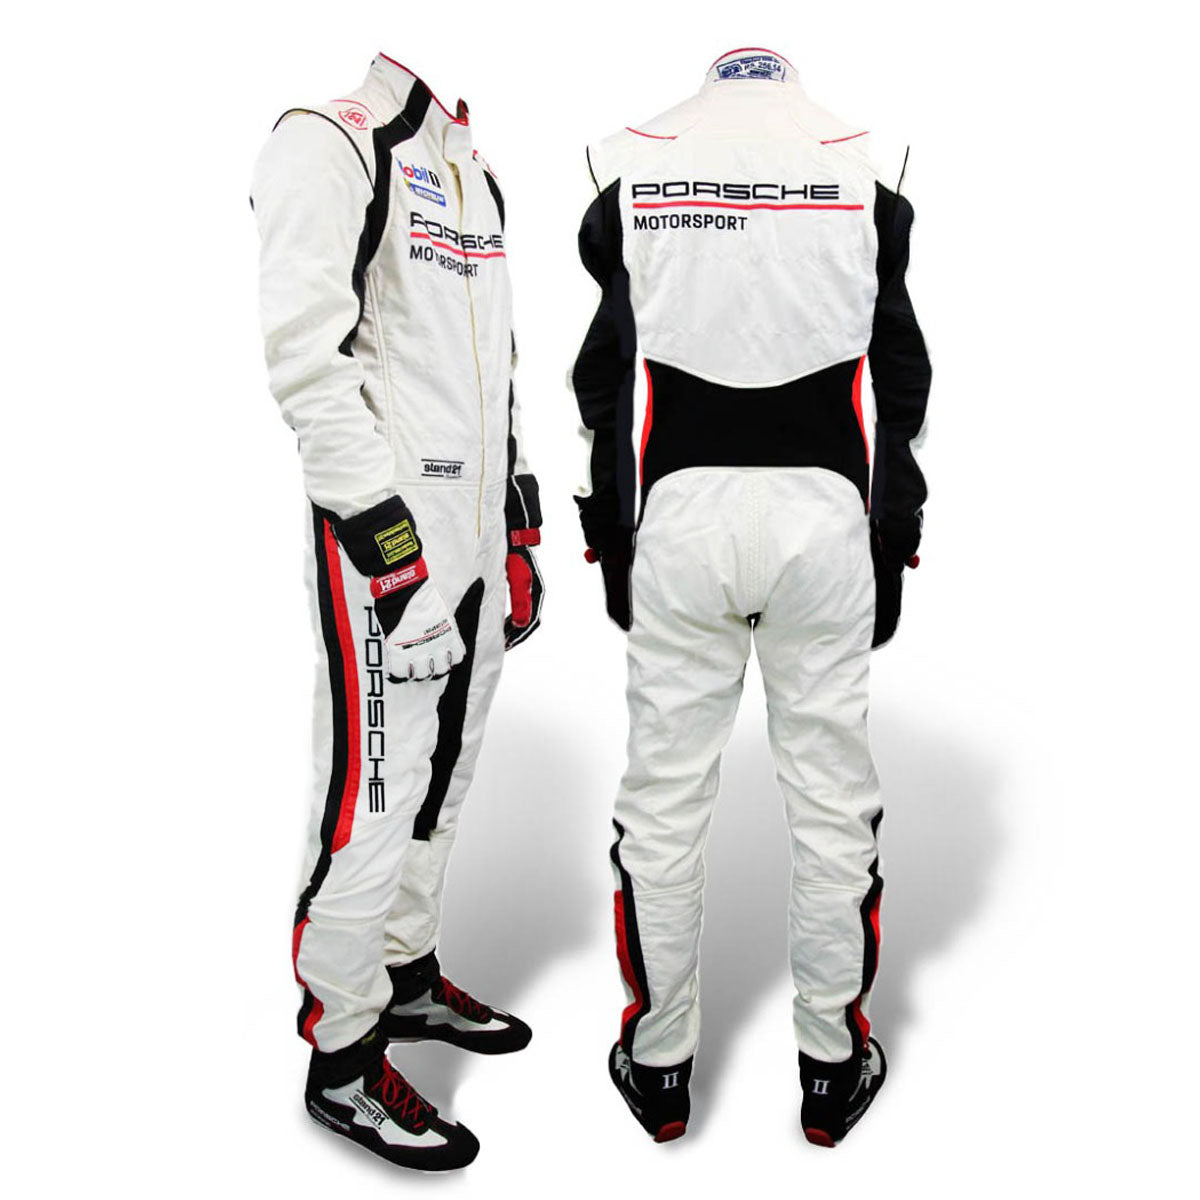 Stand21 Porsche Motorsport La Couture Race Suit Main Image